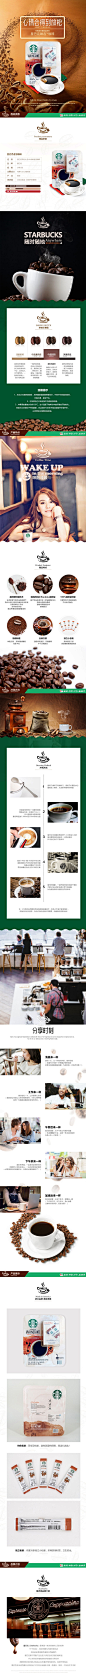 咖啡节产品详情页PSD模板